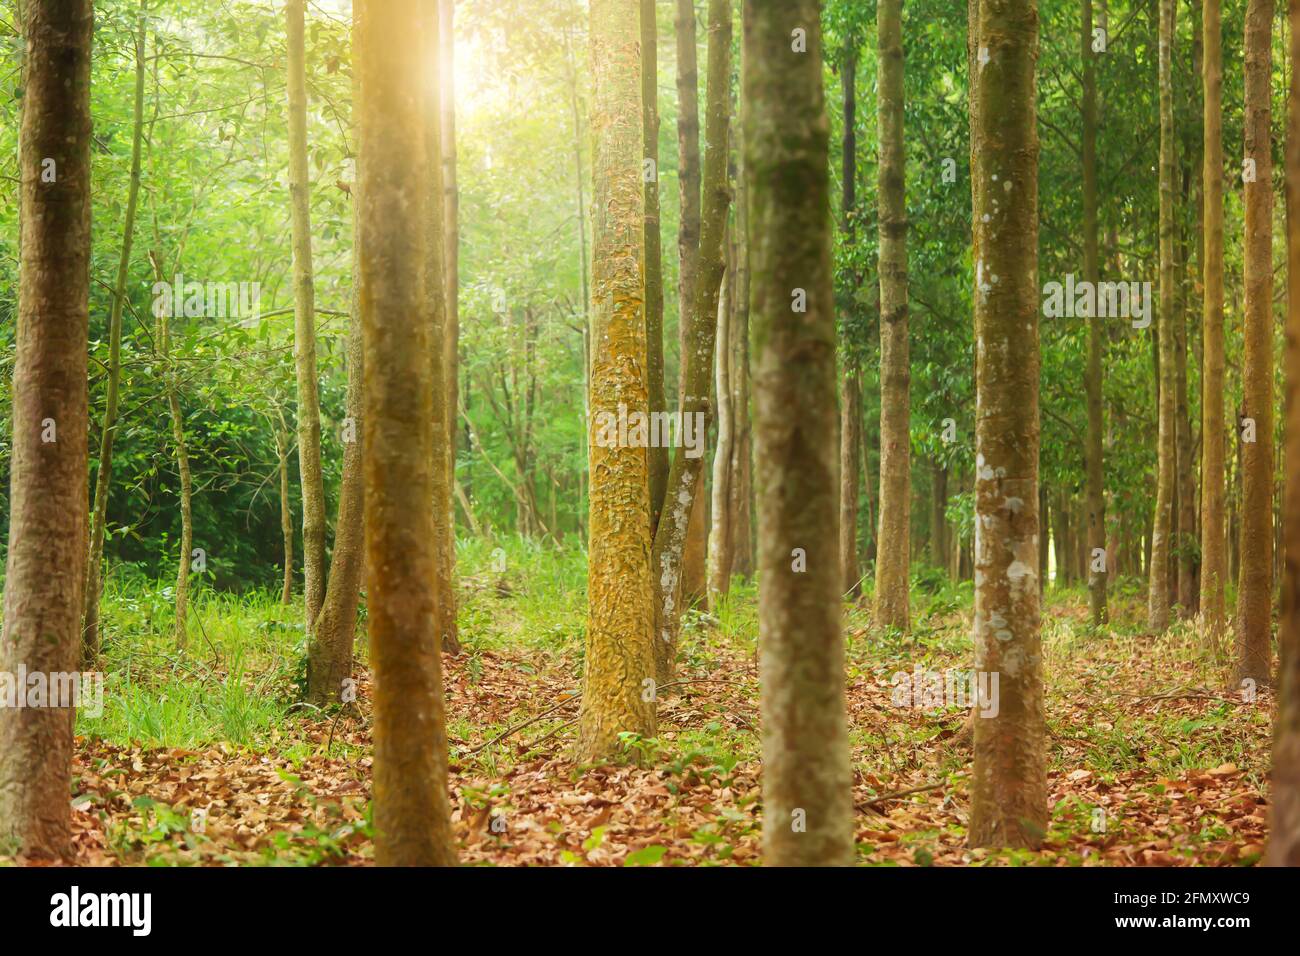 Yang, Gurjan o Garjan alberi in una piantagione di selvicoltura all'alba. Concetto di piantagione forestale. Mettere a fuoco sul tronco dell'albero di Yang. Foto Stock